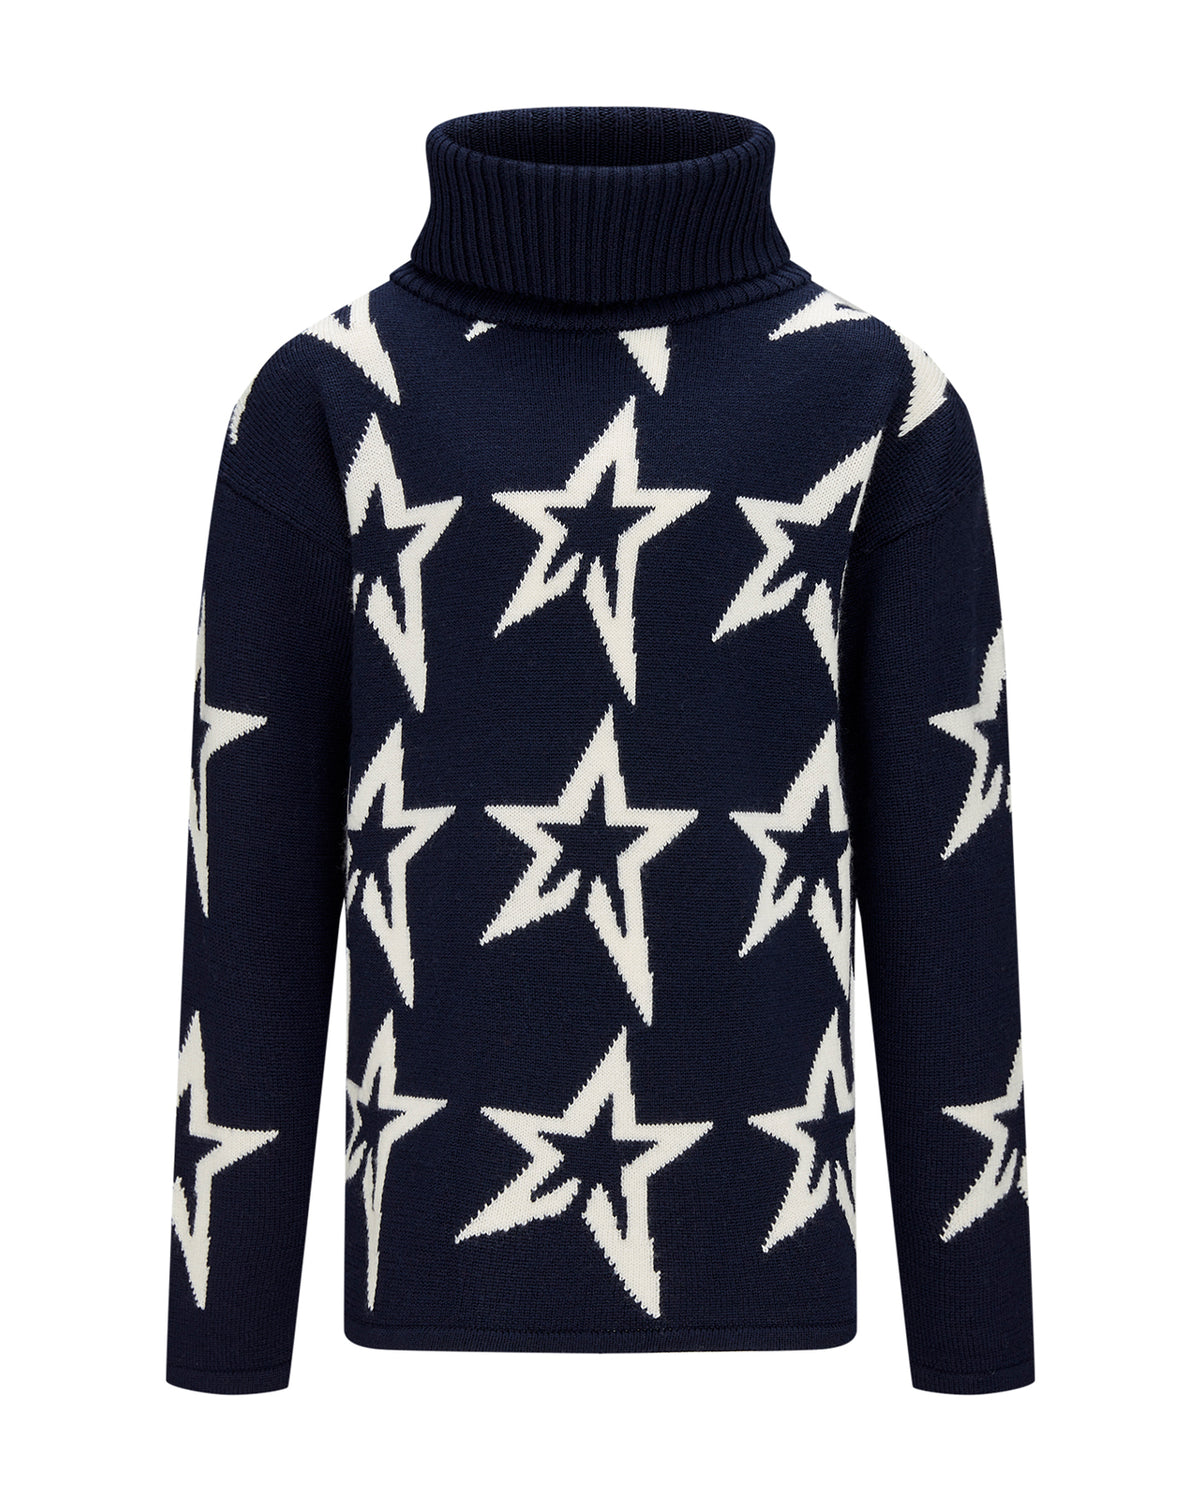 Stardust Sweater - Navy/Snow White Star